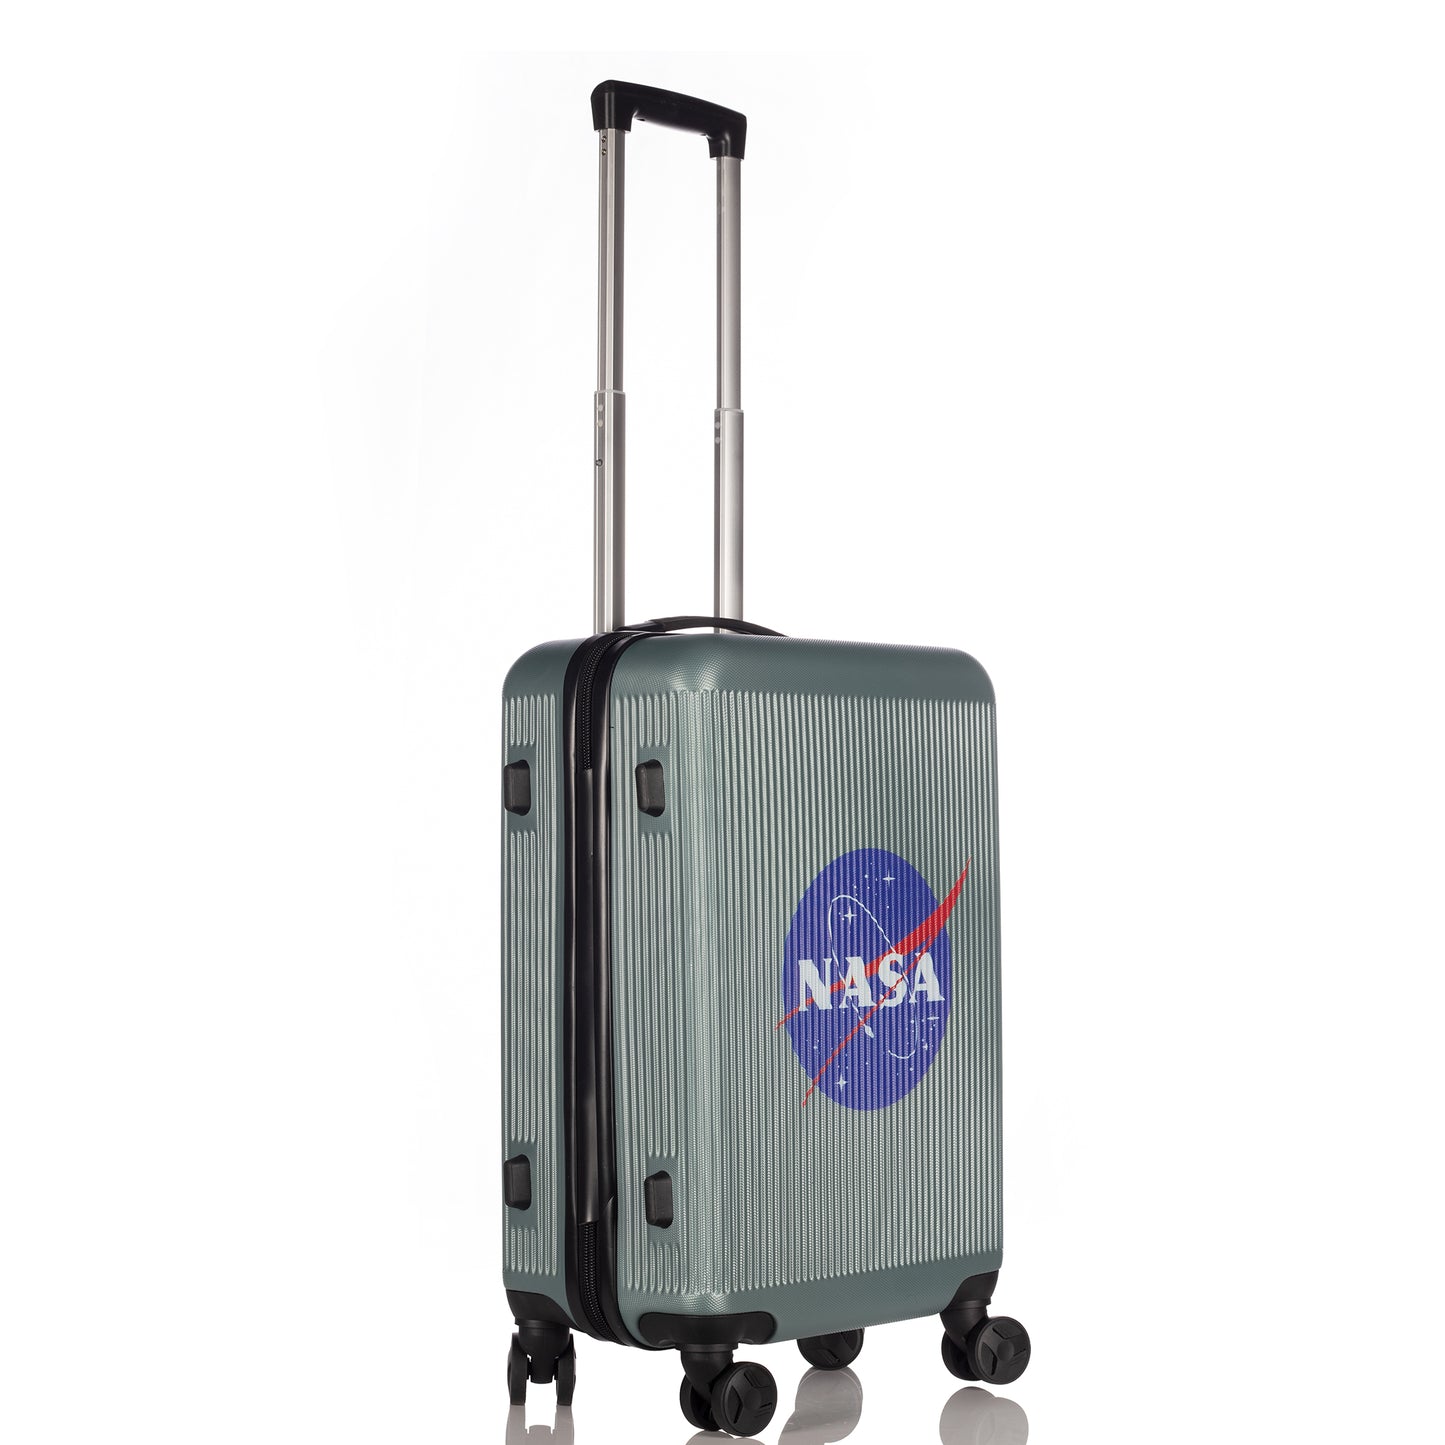 Set NASA JFK Gray 3 pieces set luggage (29"/25"/21")